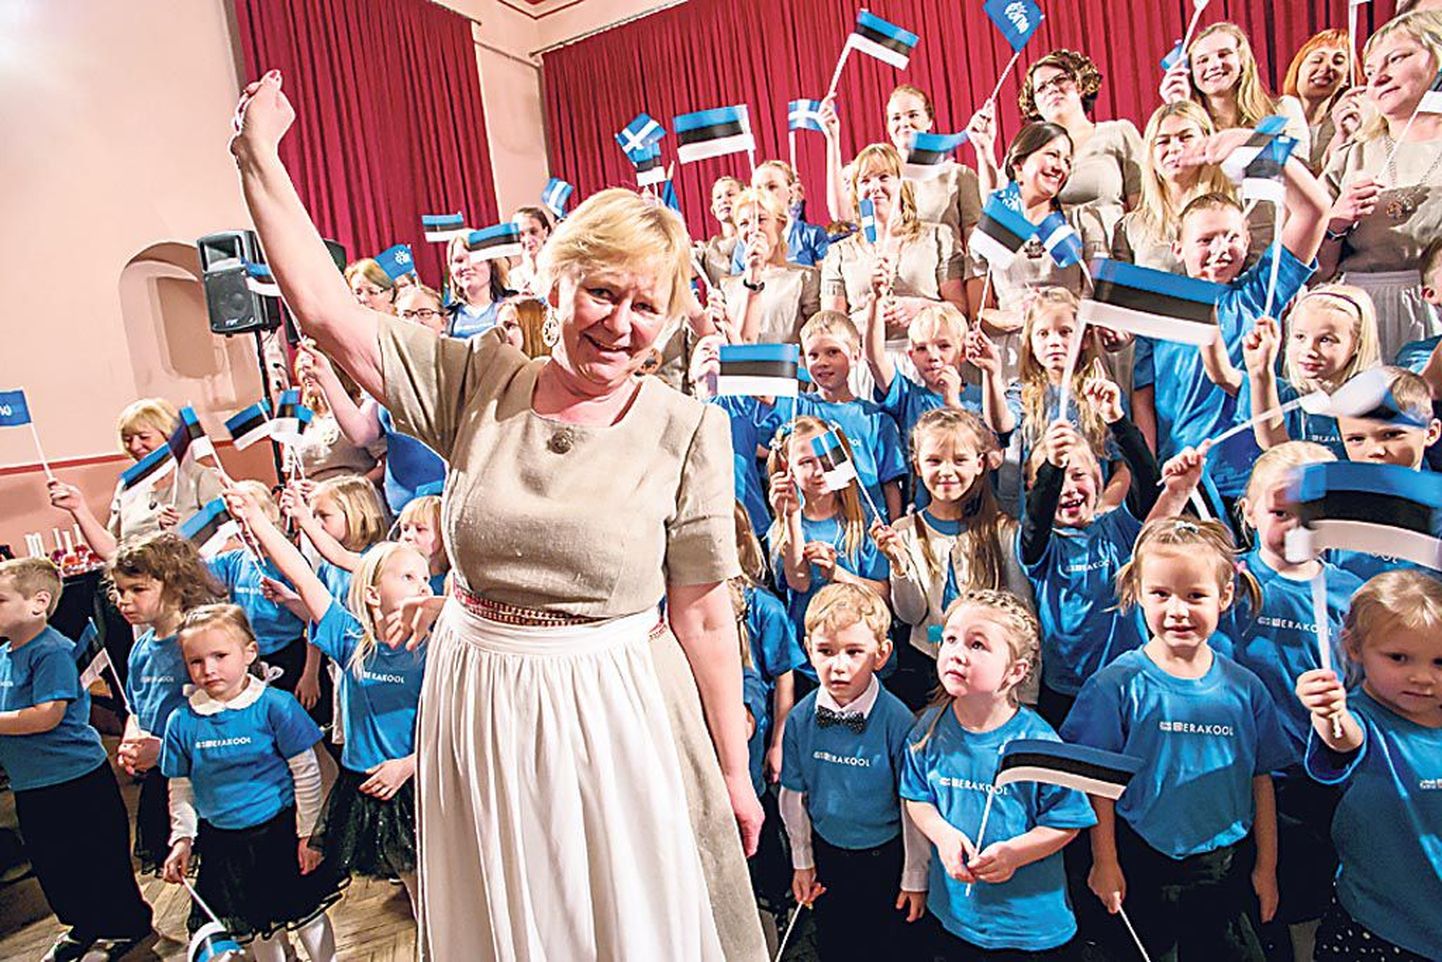 Kodumaa sünnipäevale pühendatud kontserdil “Kodu” esinesid Jana Tringi erakooli laulustuudio lapsed, esiplaanil muusika- ja lauluõpetaja Jana Trink.